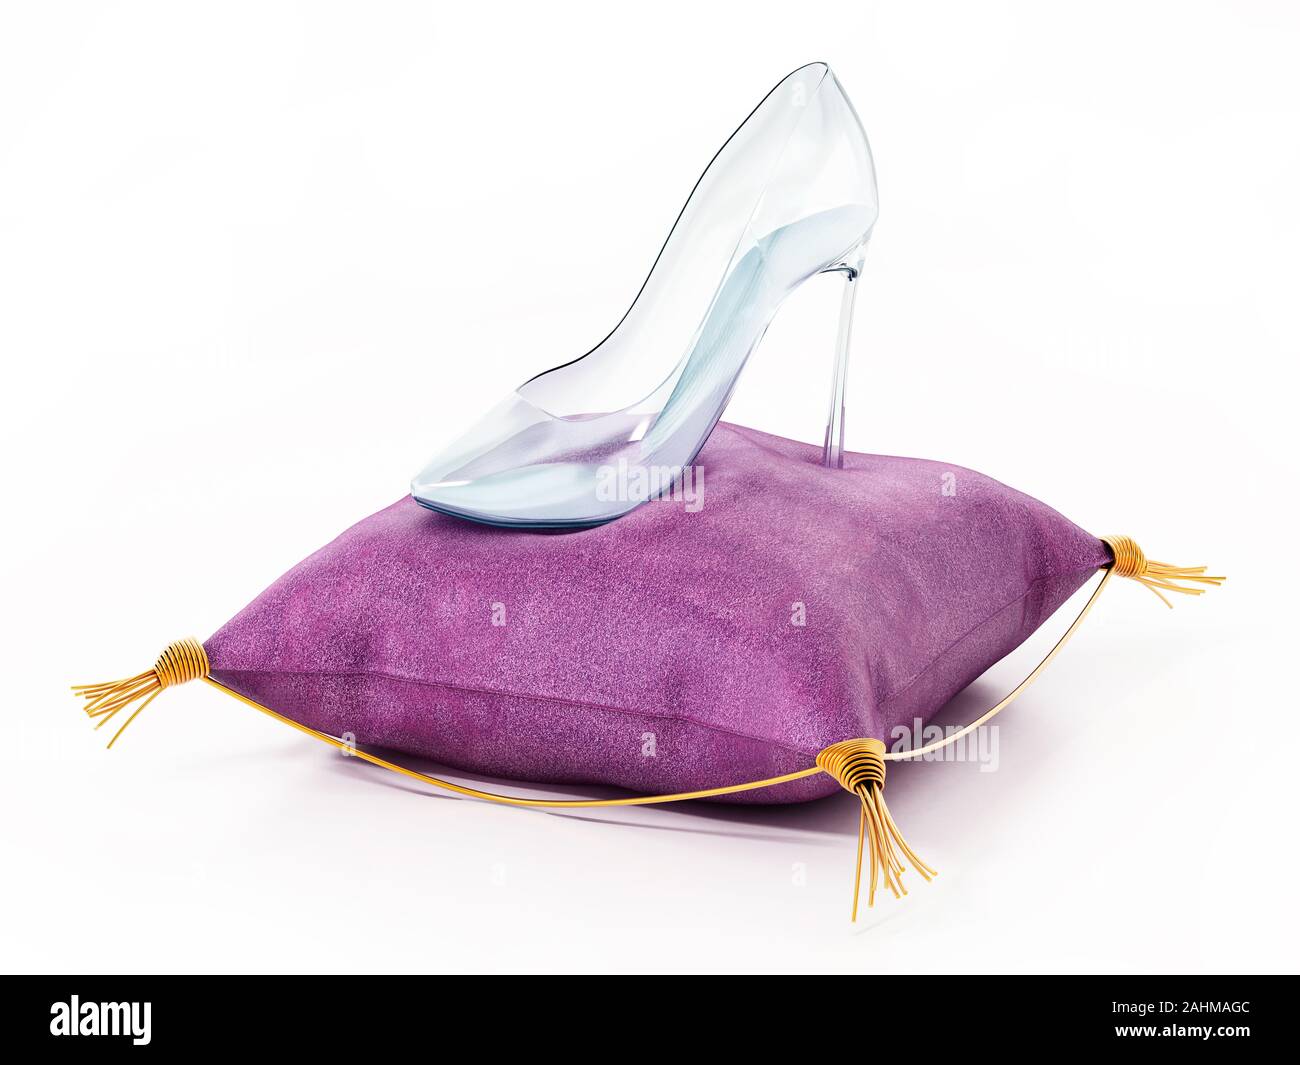 Single glass shoe standing on violet velvet cushion. 3D illustration. Stock Photo